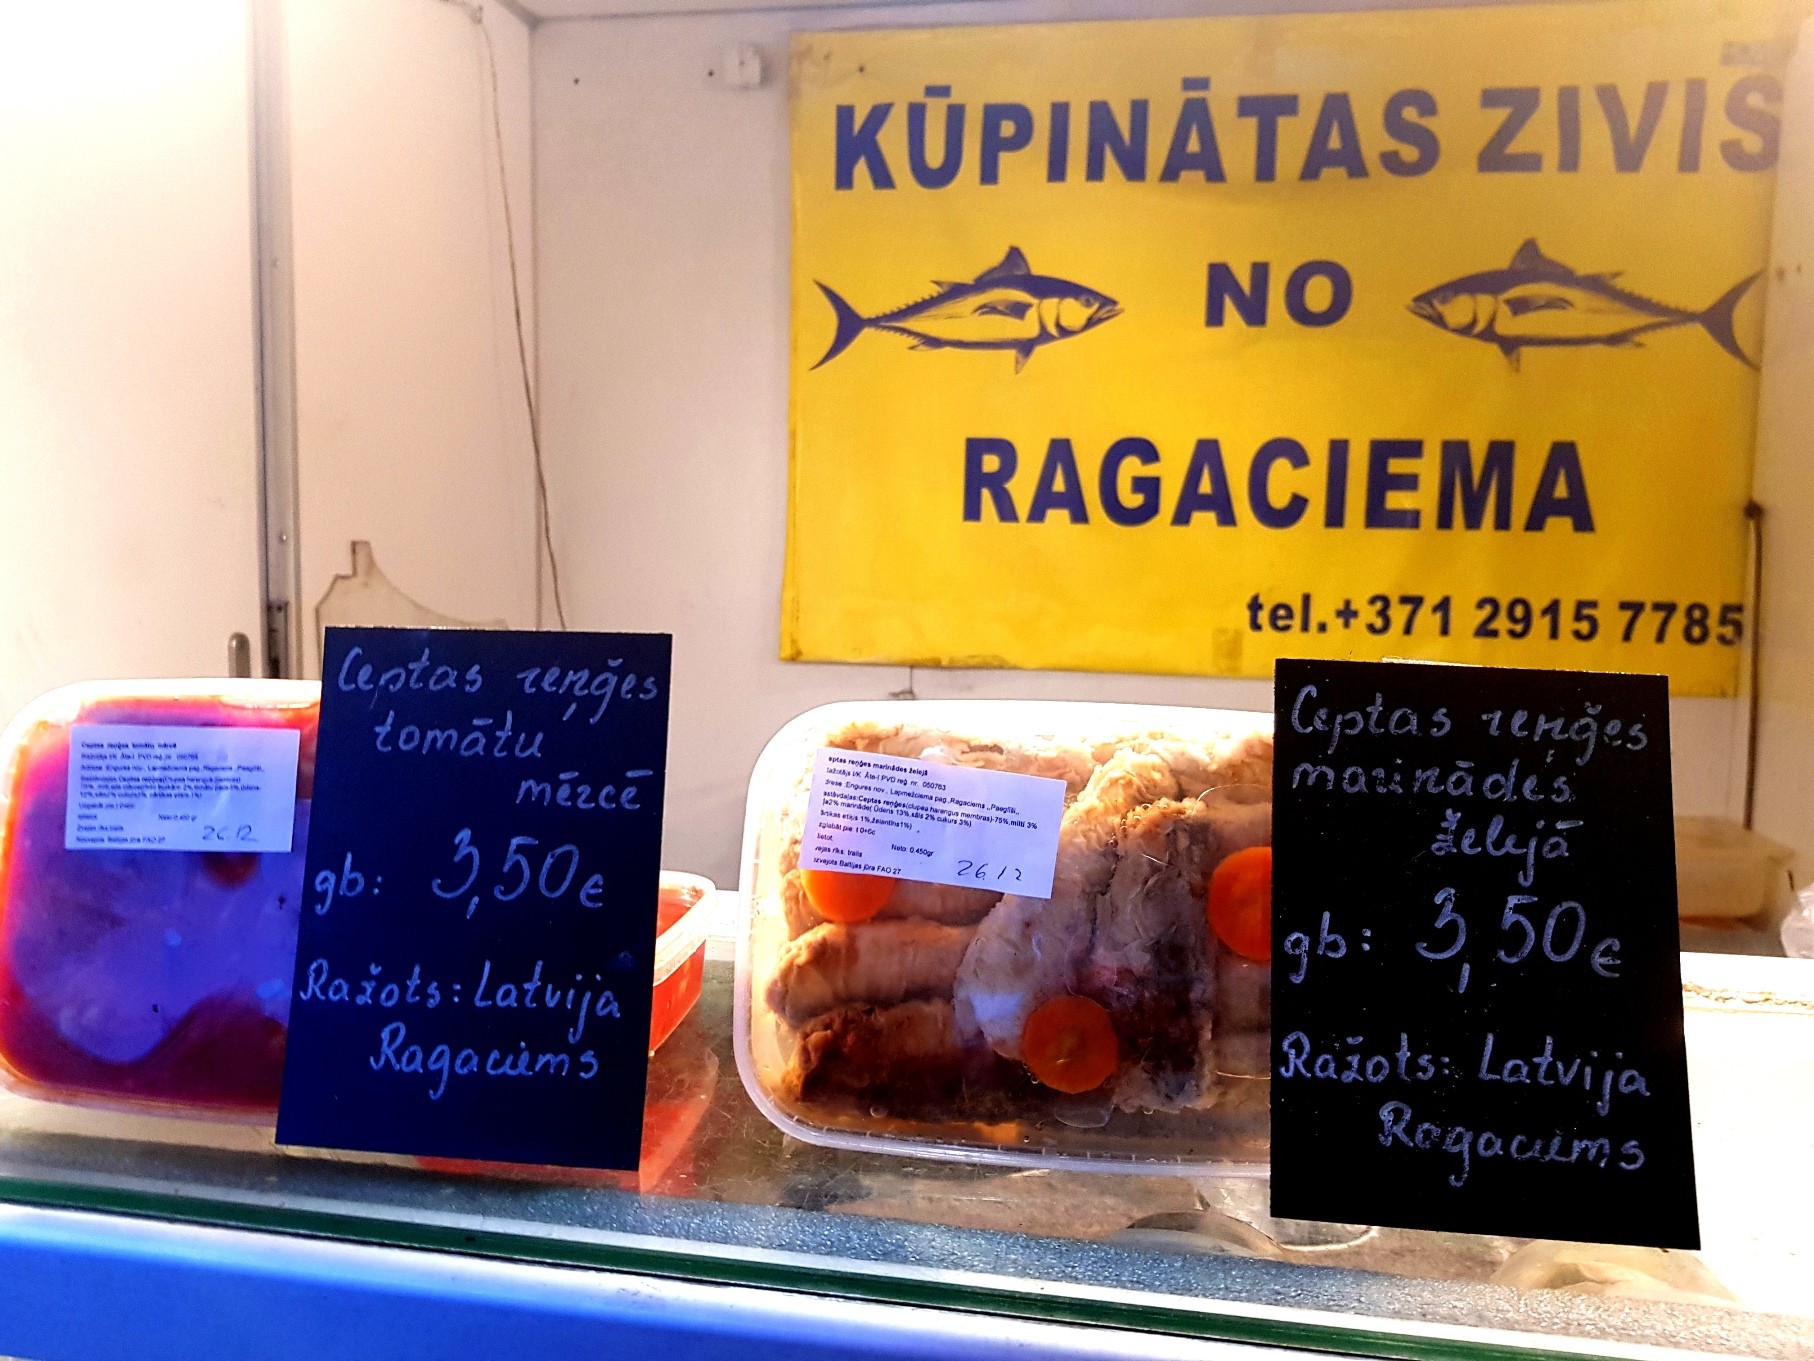 Ēdam zivis un esam veseli! Veselība un dzīvildze ar Latvijā ražotām zivīm. Kur tās nopirkt?  (Bilde 1)